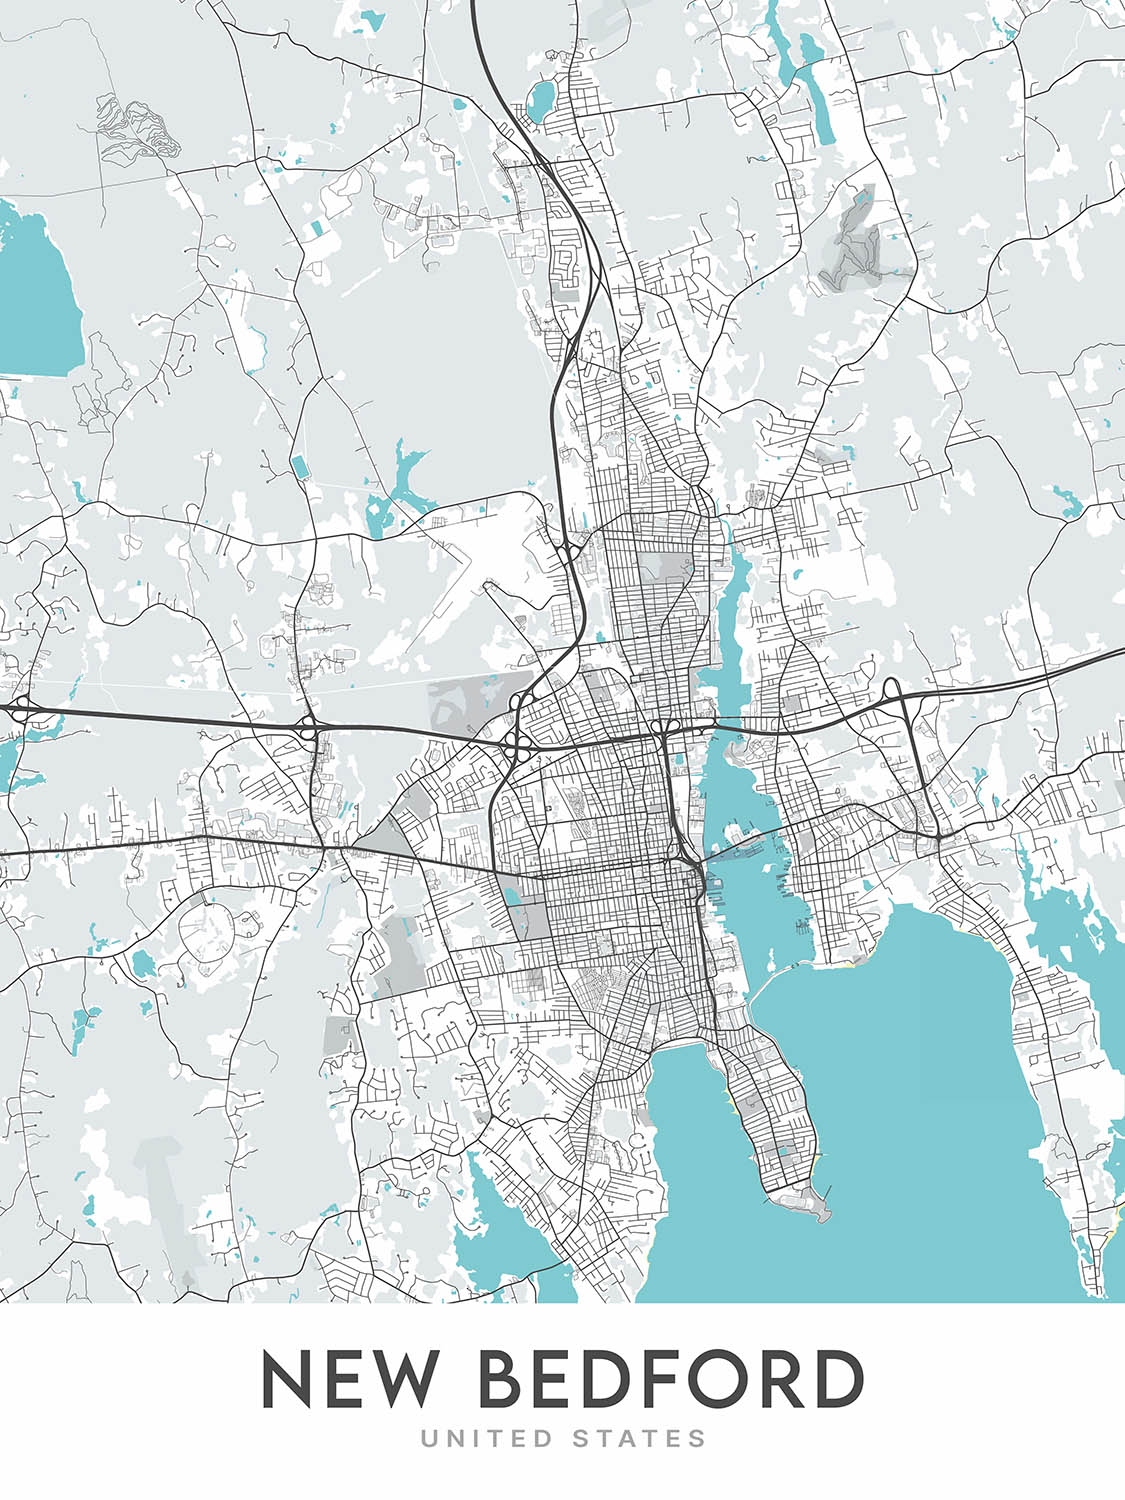 Plan de la ville moderne de New Bedford, MA : centre-ville, North End, West End, South End, East End